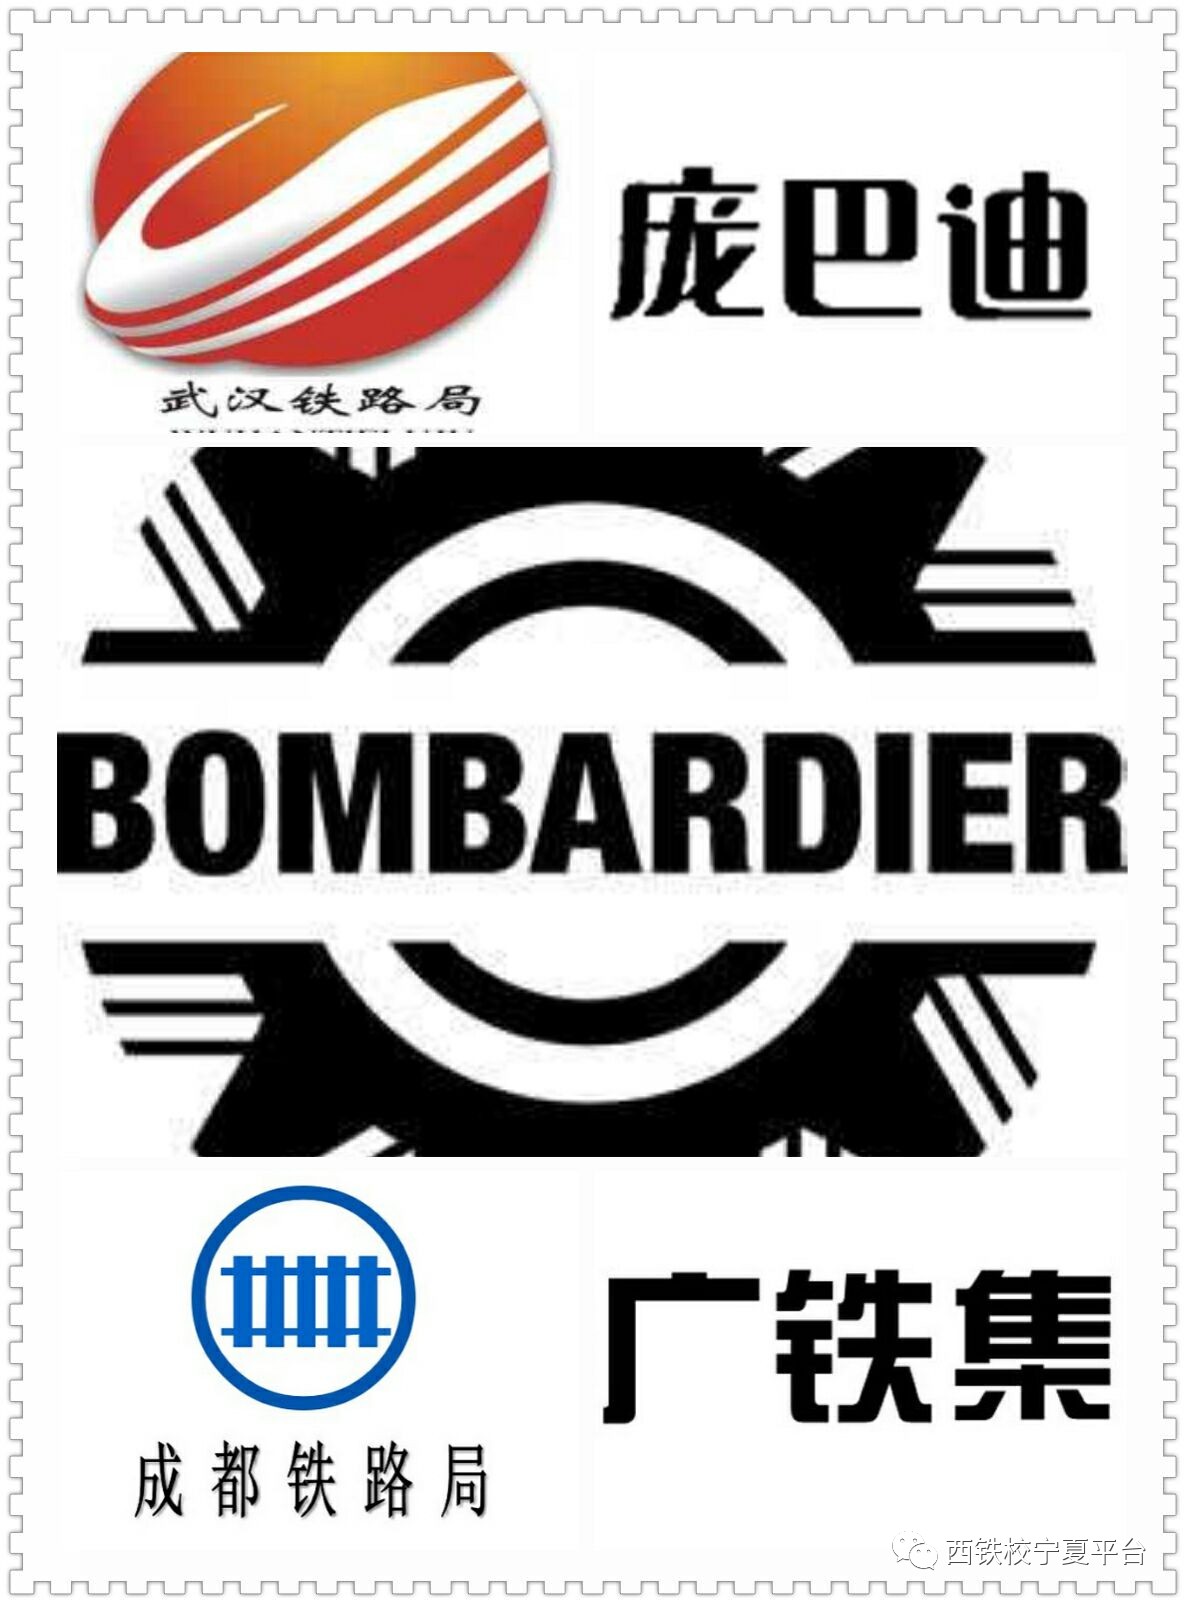 武汉铁路局 logo图片